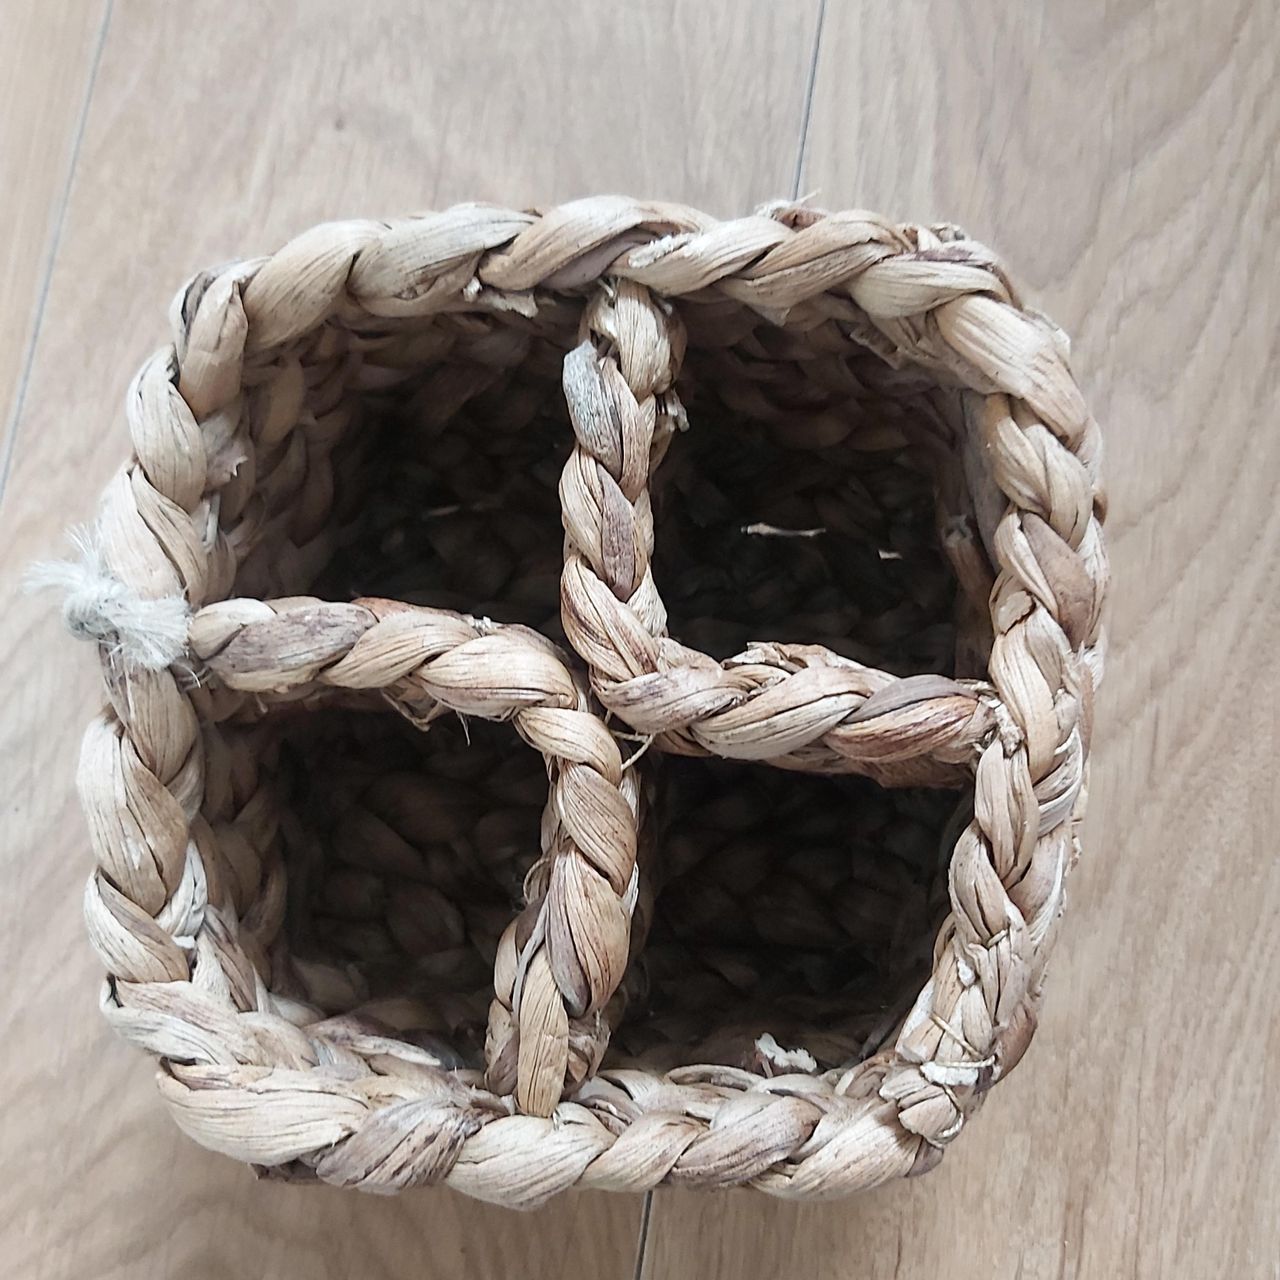 Simple rope bowl or basket 